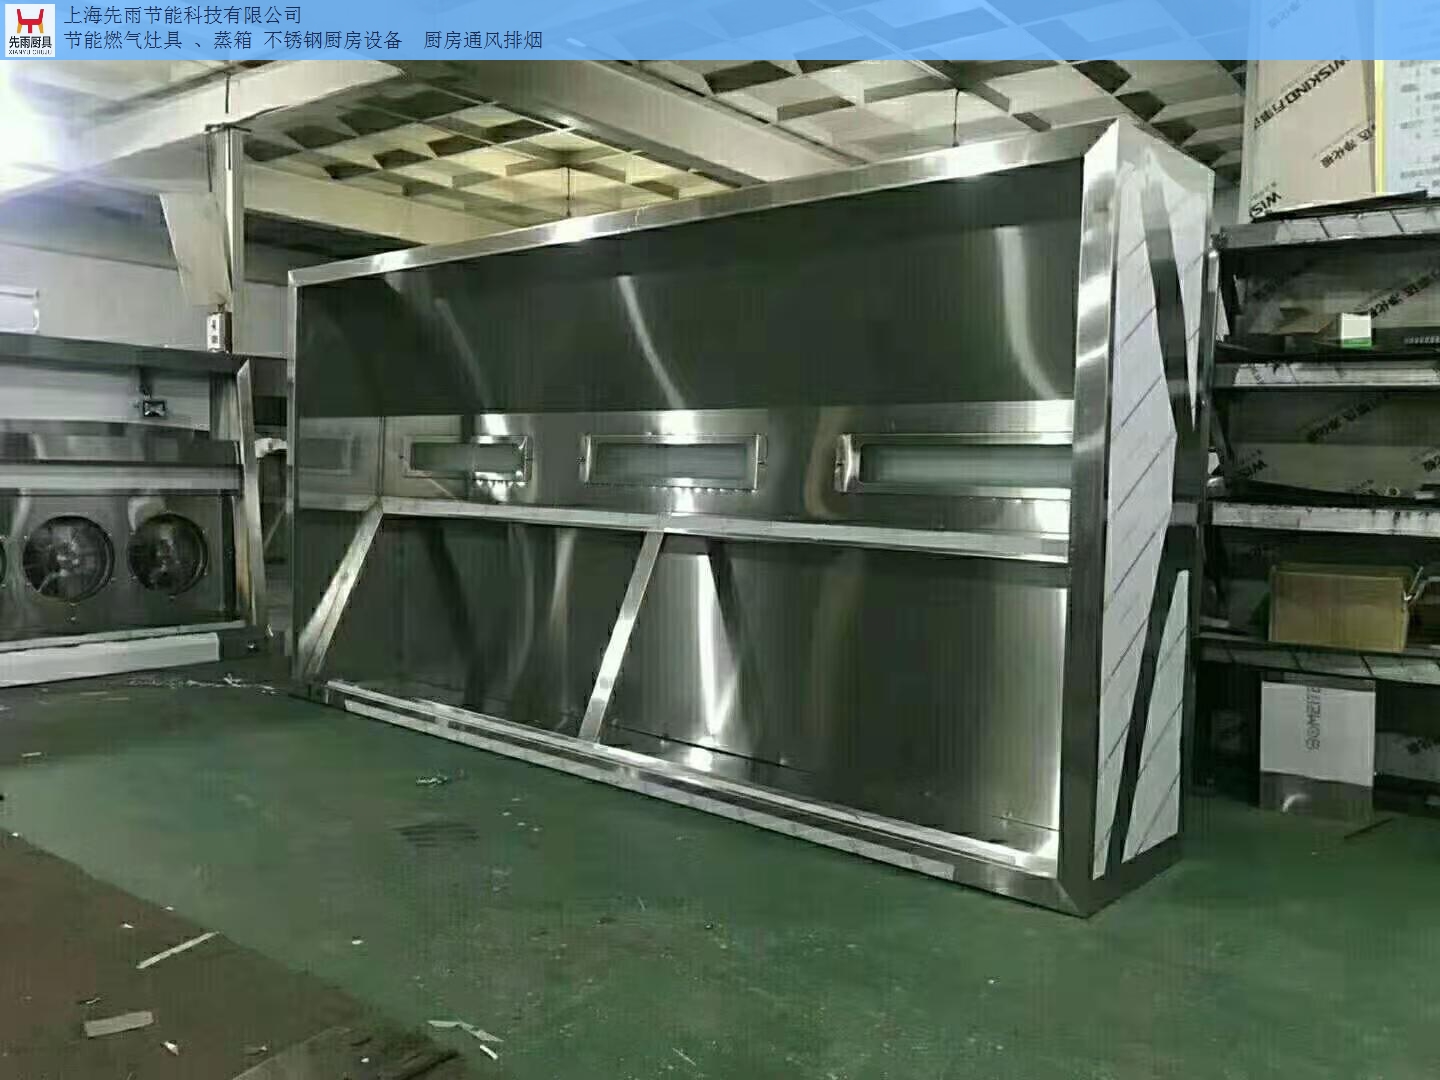 上海宝山区厨房通风排烟管道报价 上海先雨厨具厨房工程供应